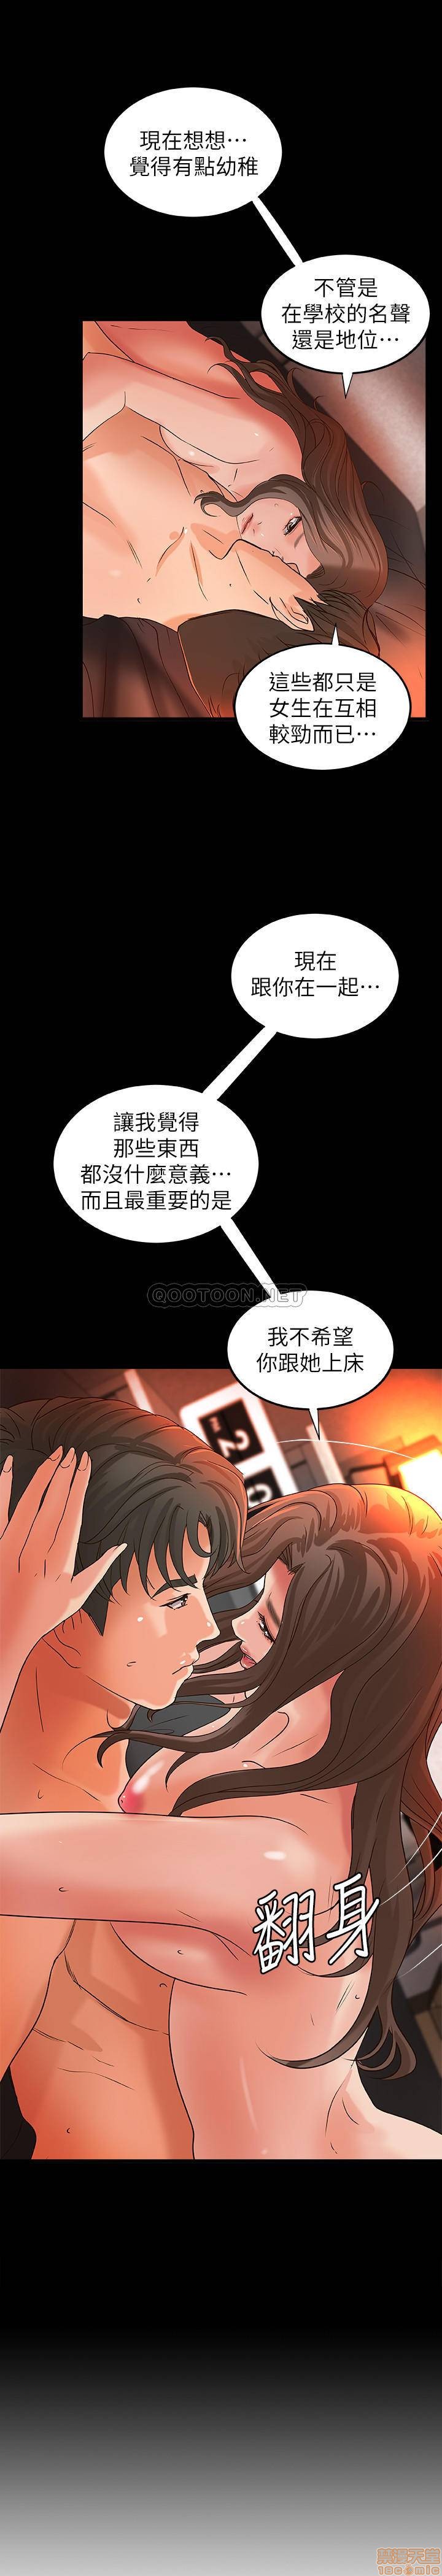 《御姐的实战教学》漫画 第27话 - 志翔上夜店的原因